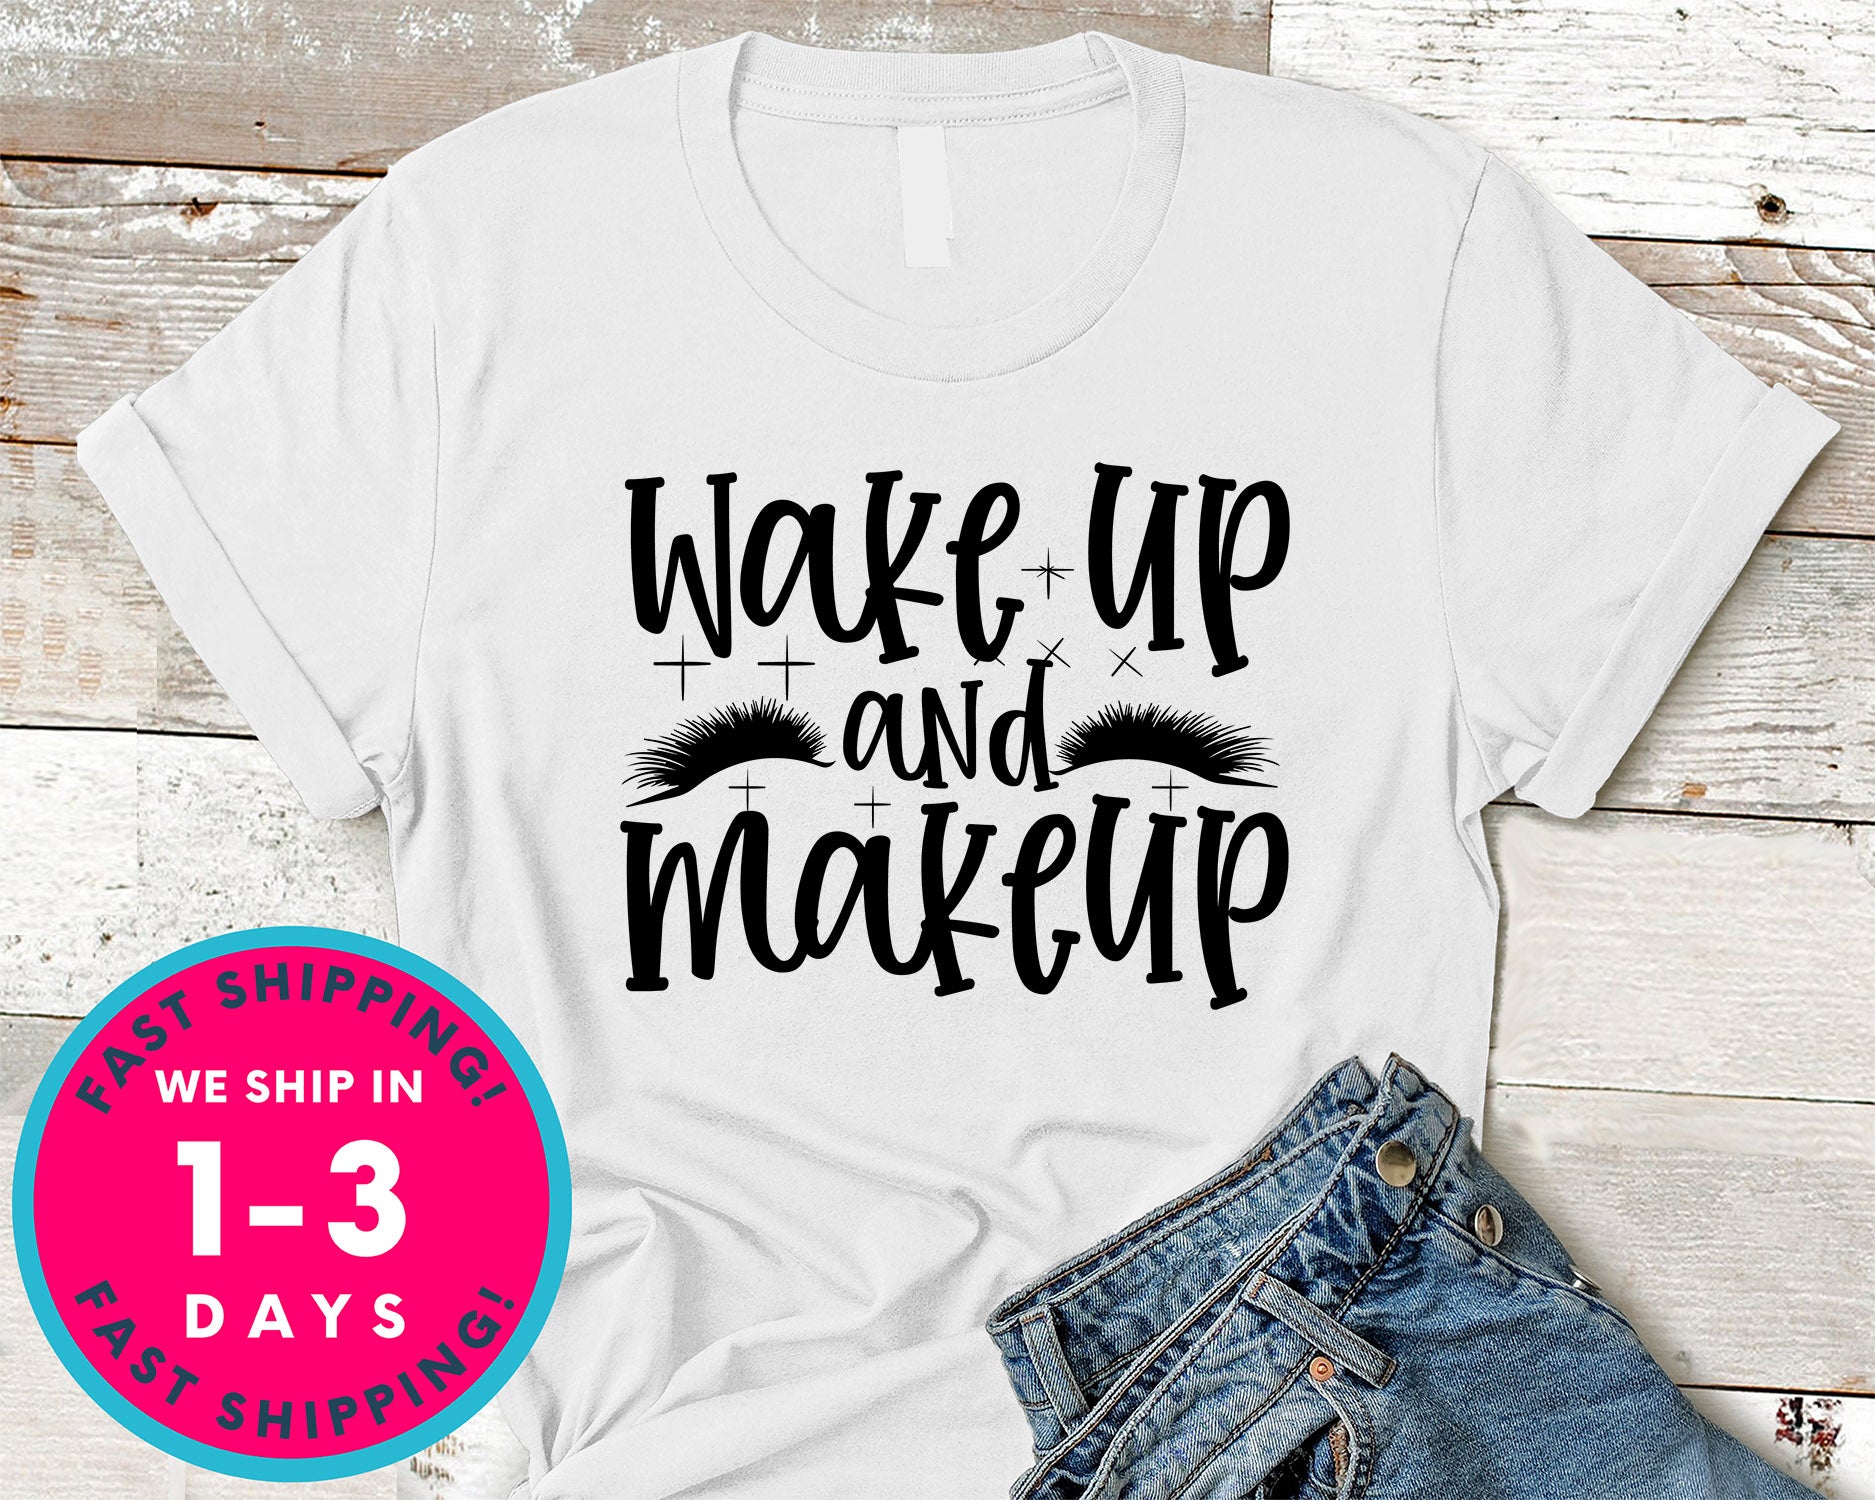 Wake Up And Makeup Design 2